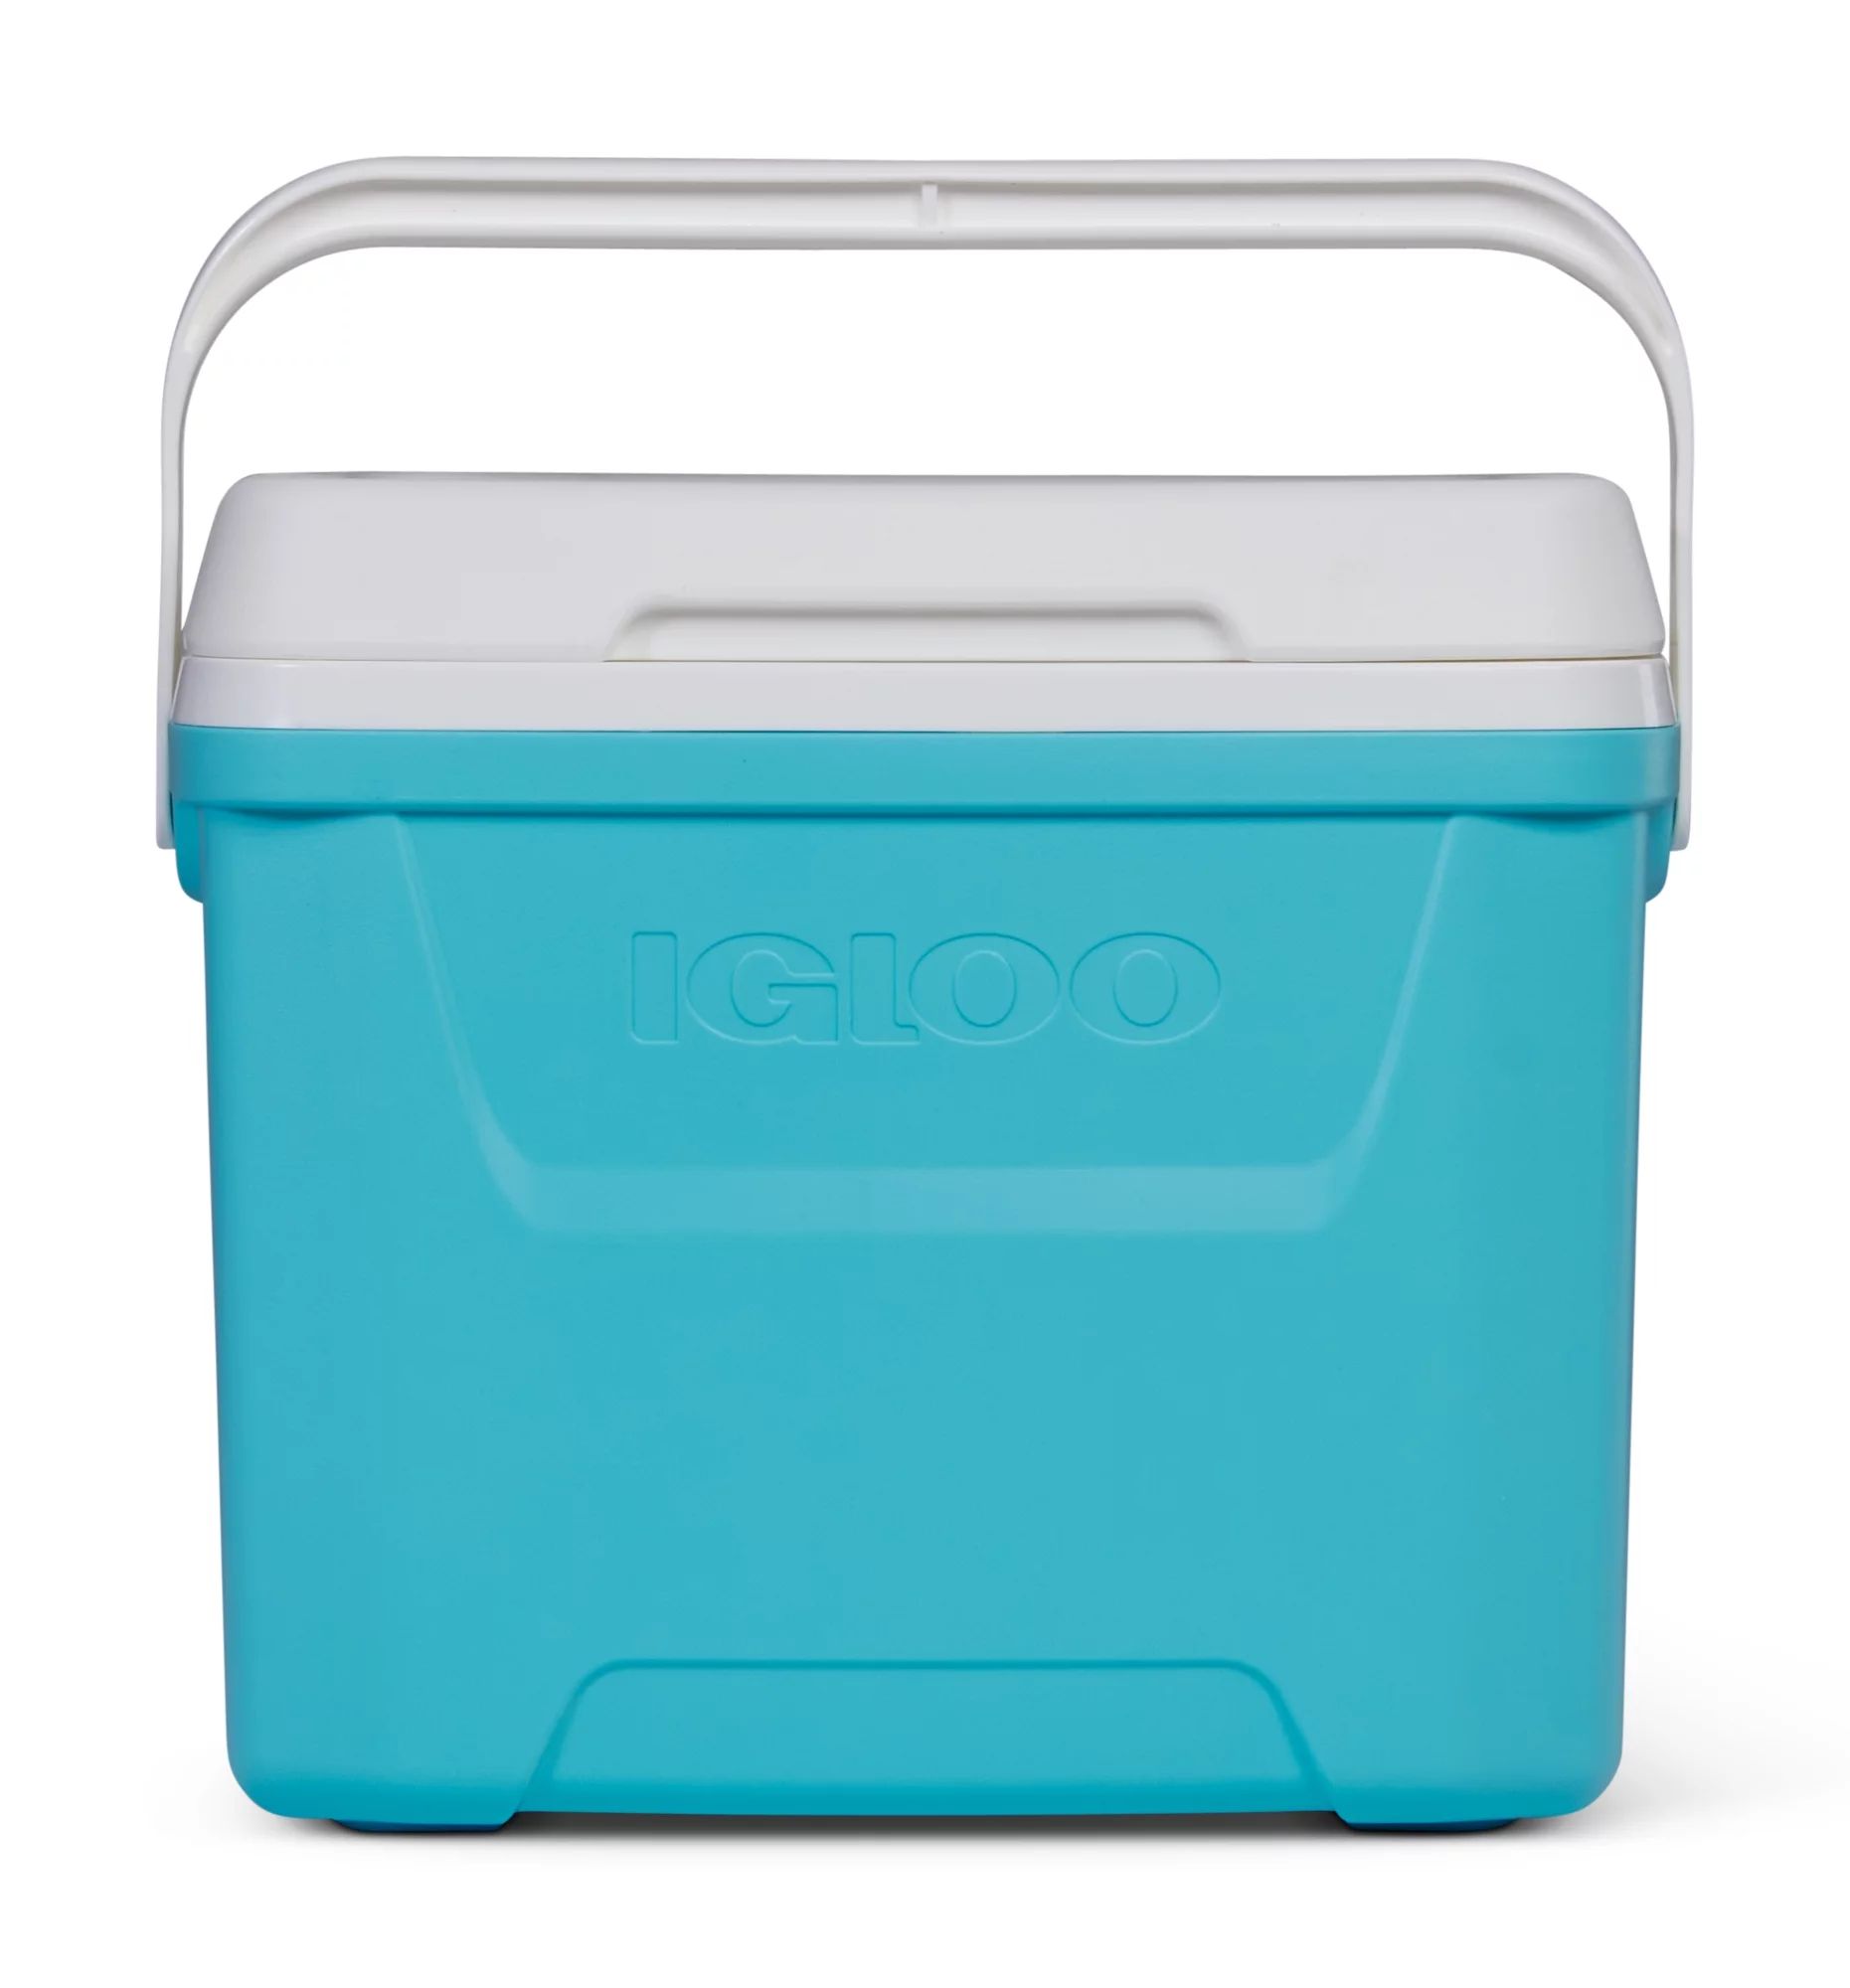 Igloo 28 qt. Hard Sided Ice Chest Cooler, Aqua Blue and White | Walmart (US)